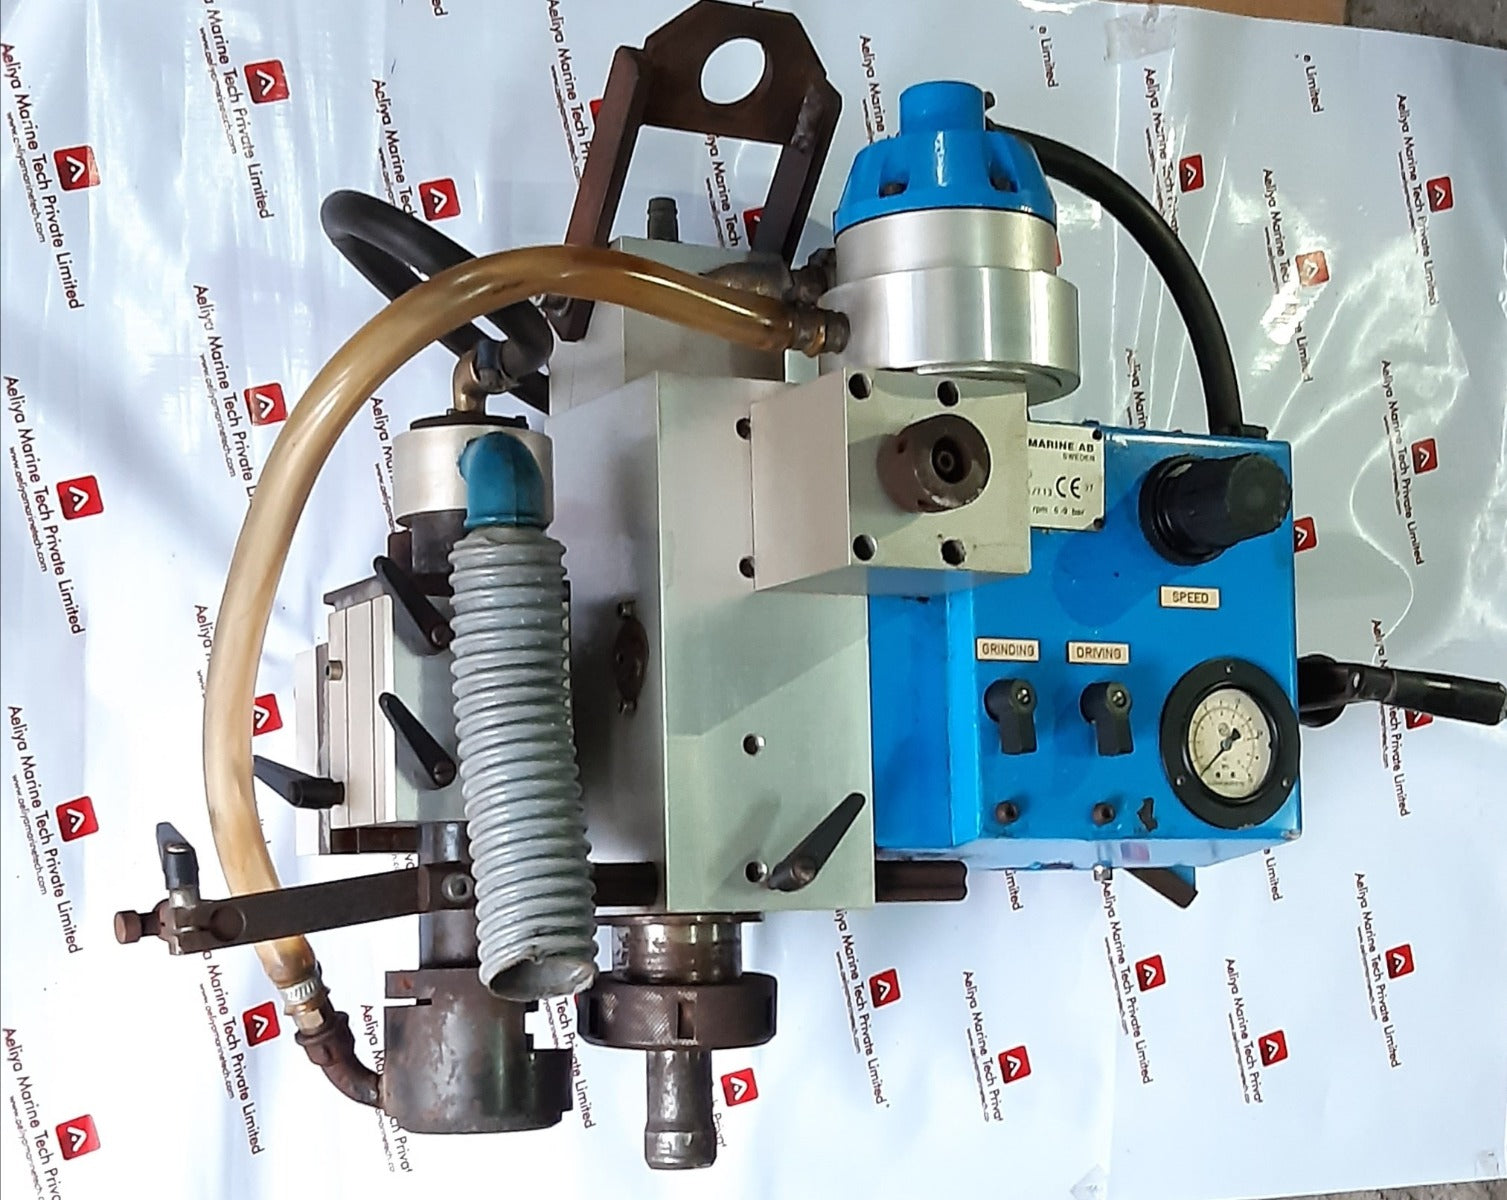 Chris-marine lcd valve seat grinding machine